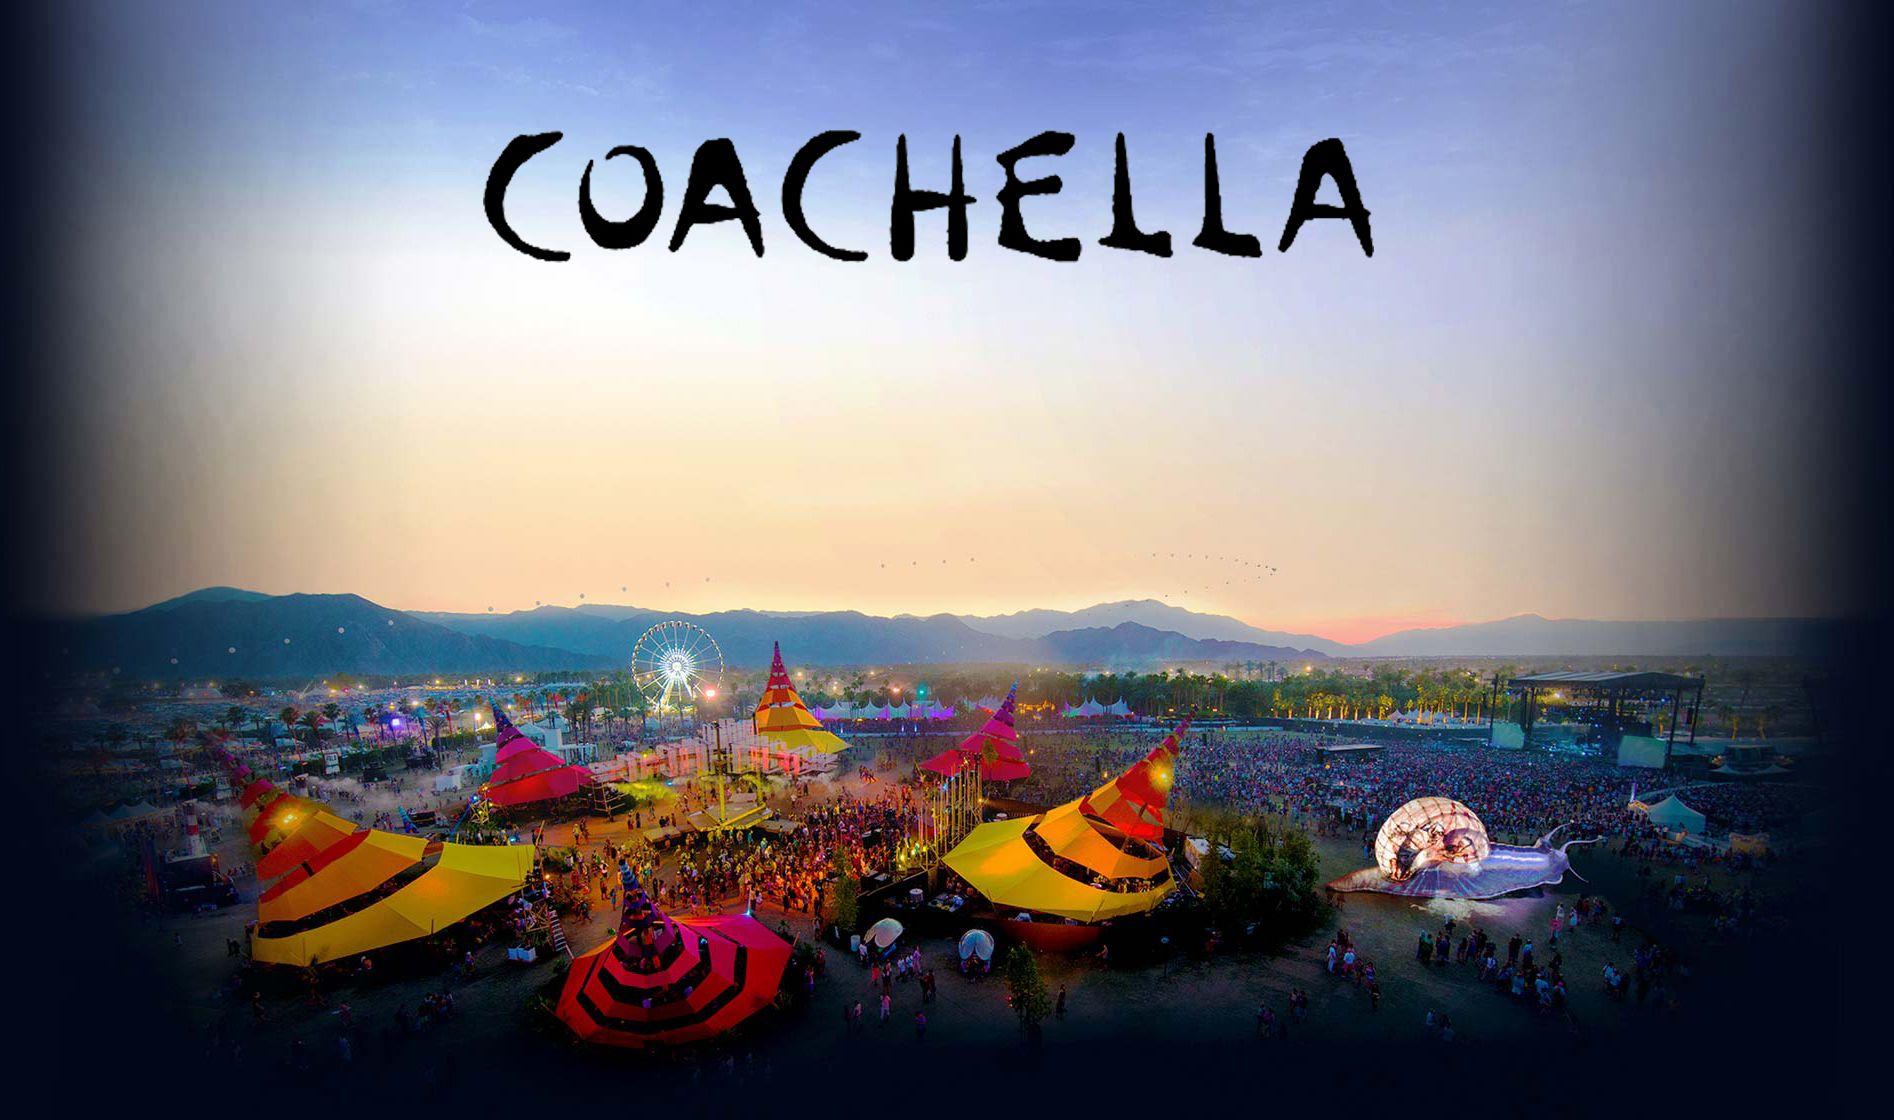 Coachella Festival HD Wallpaper. Beautiful image HD Picture